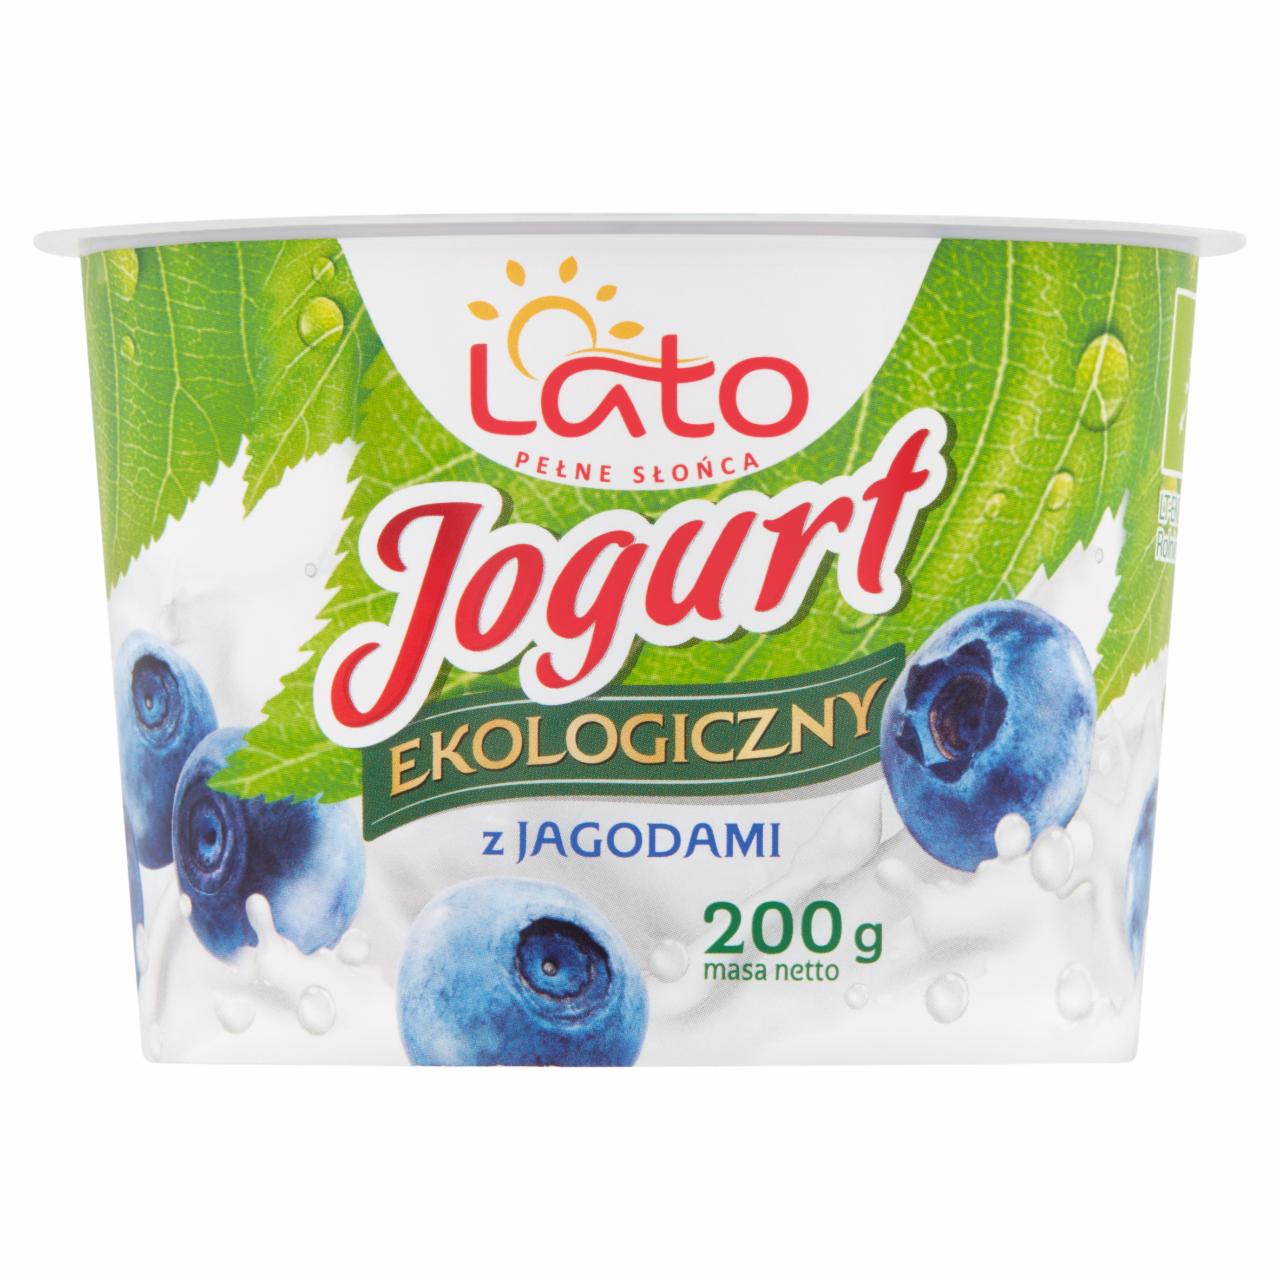 Zdjęcia - Lato pełne słońca Jogurt ekologiczny z jagodami 200 g